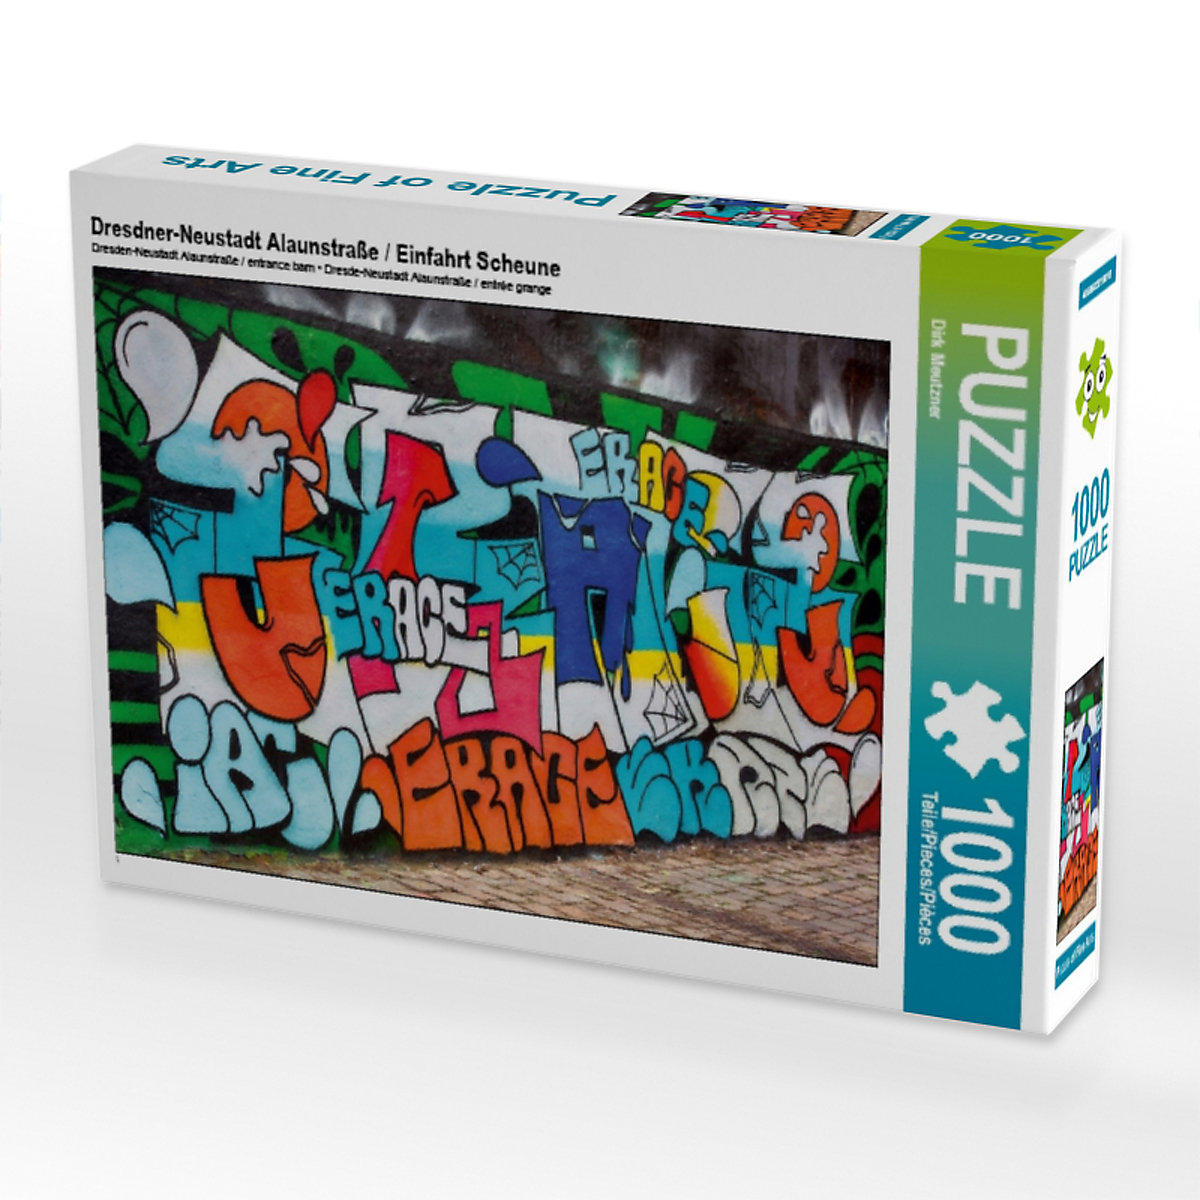 CALVENDO® Puzzle CALVENDO Puzzle Dresdner-Neustadt Alaunstraße / Einfahrt Scheune 1000 Teile Foto-Puzzle für glückliche Stunden